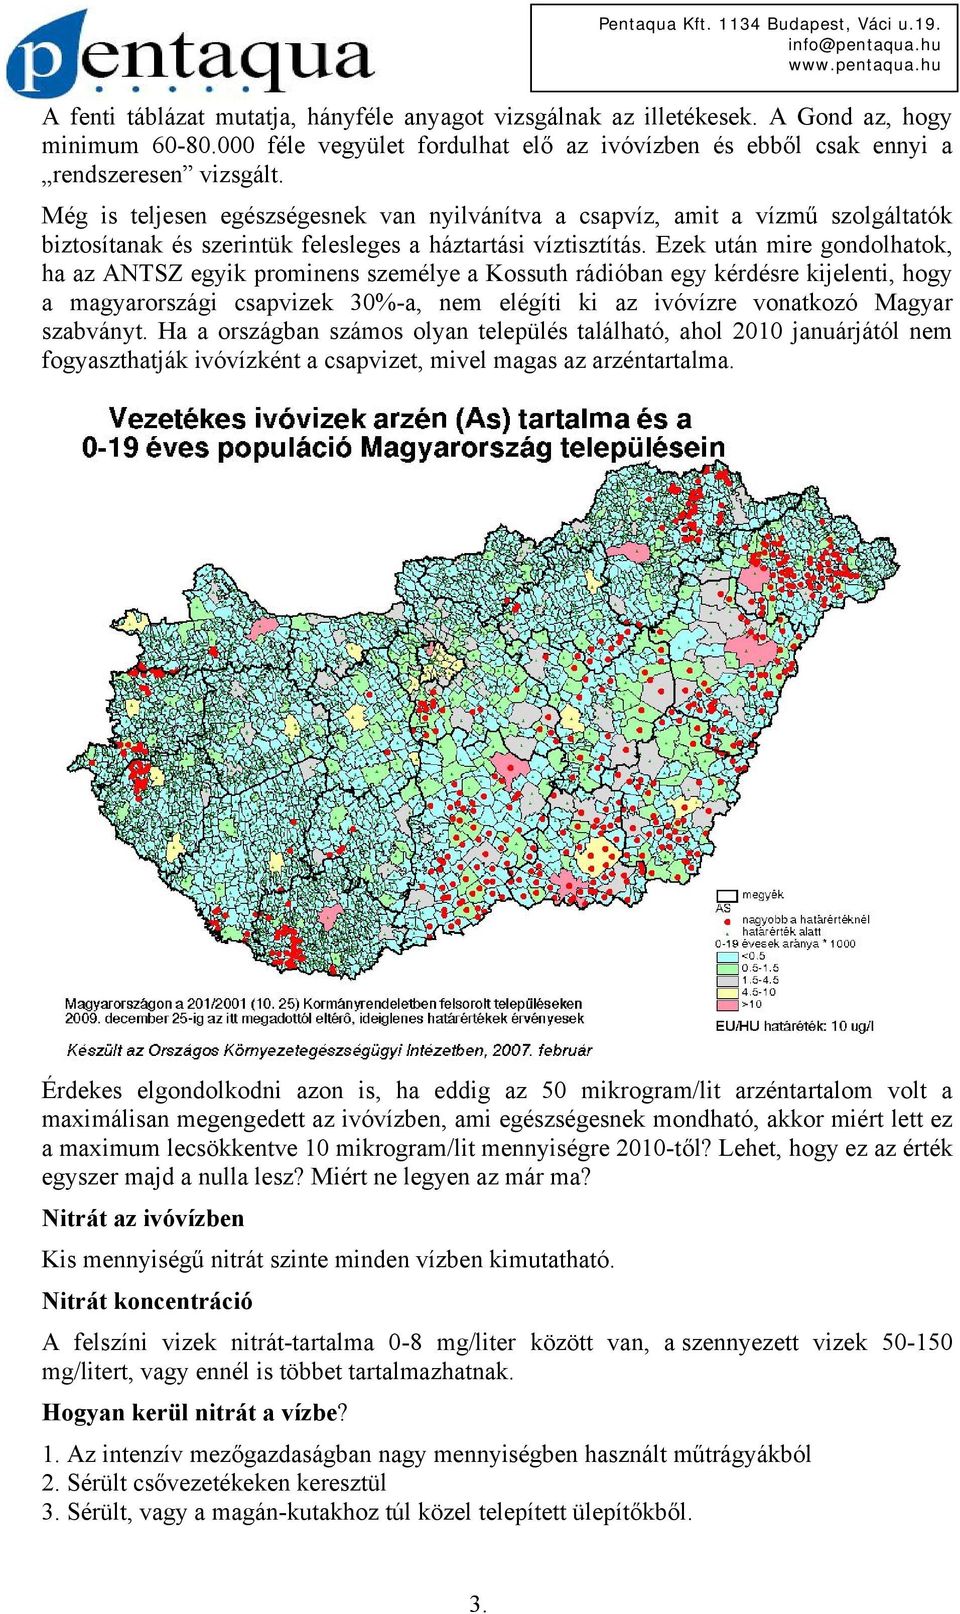 Ezek után mire gondolhatok, ha az ANTSZ egyik prominens személye a Kossuth rádióban egy kérdésre kijelenti, hogy a magyarországi csapvizek 30%-a, nem elégíti ki az ivóvízre vonatkozó Magyar szabványt.